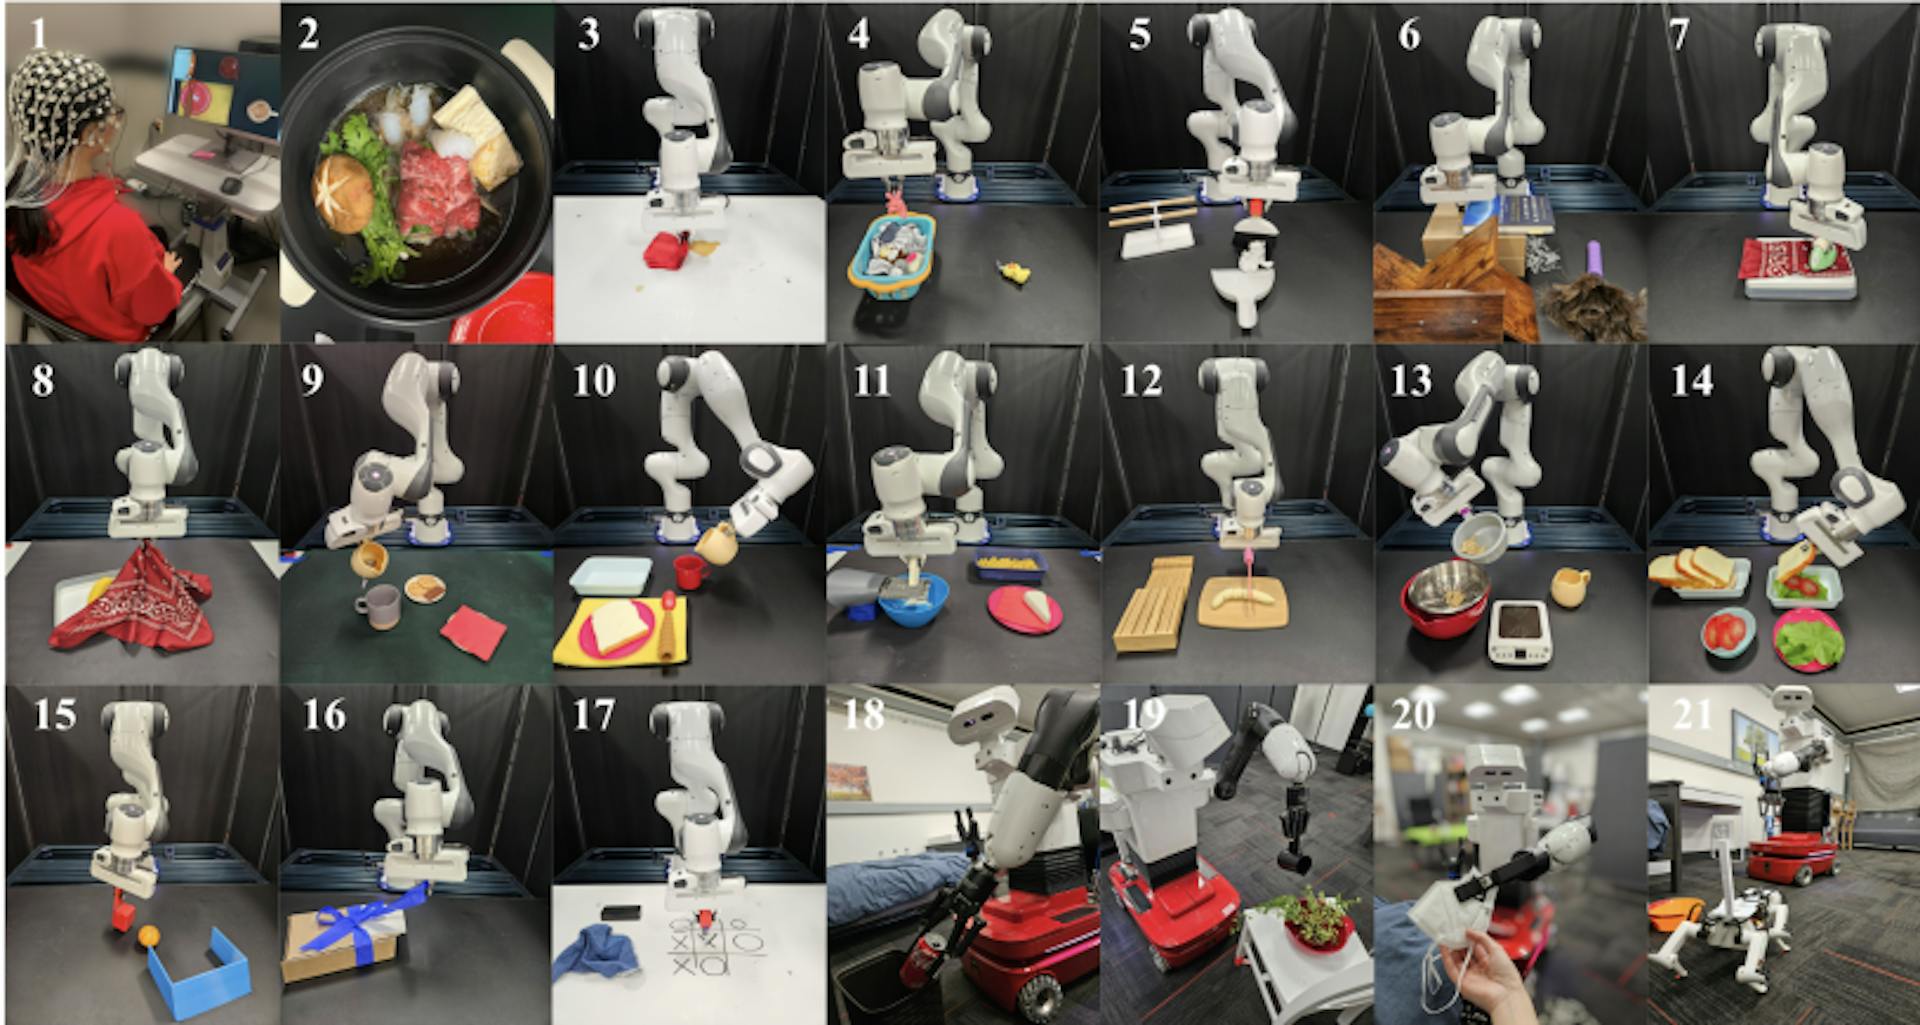 그림 1: NOIR은 인간이 뇌 신호(1)를 사용하여 로봇을 제어하여 스키야키 만들기(2), 옷 다림질(7), Tic-Tac 게임과 같은 일상 활동을 수행할 수 있도록 하는 범용 뇌-로봇 인터페이스입니다. -친구들과 발가락 놀기(17), 로봇개 쓰다듬기(21).